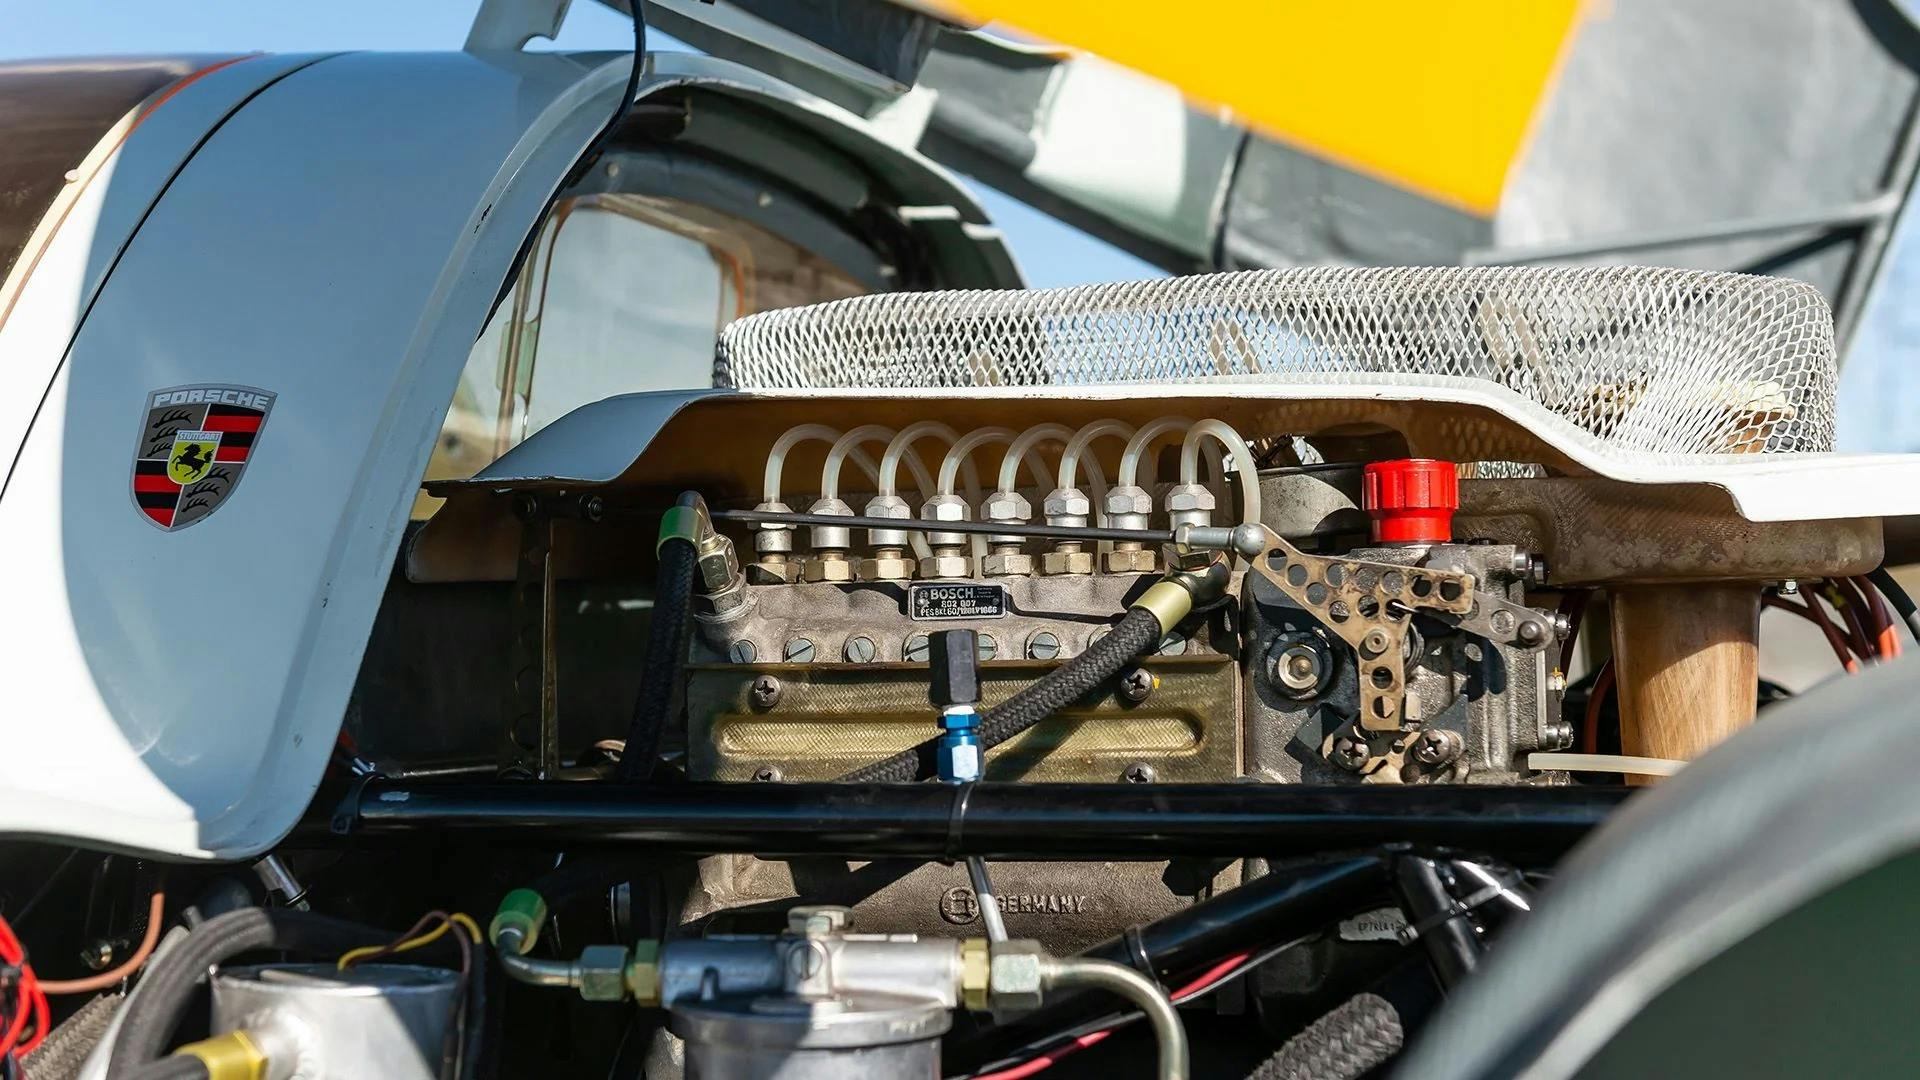 1968 Porsche 907 K engine